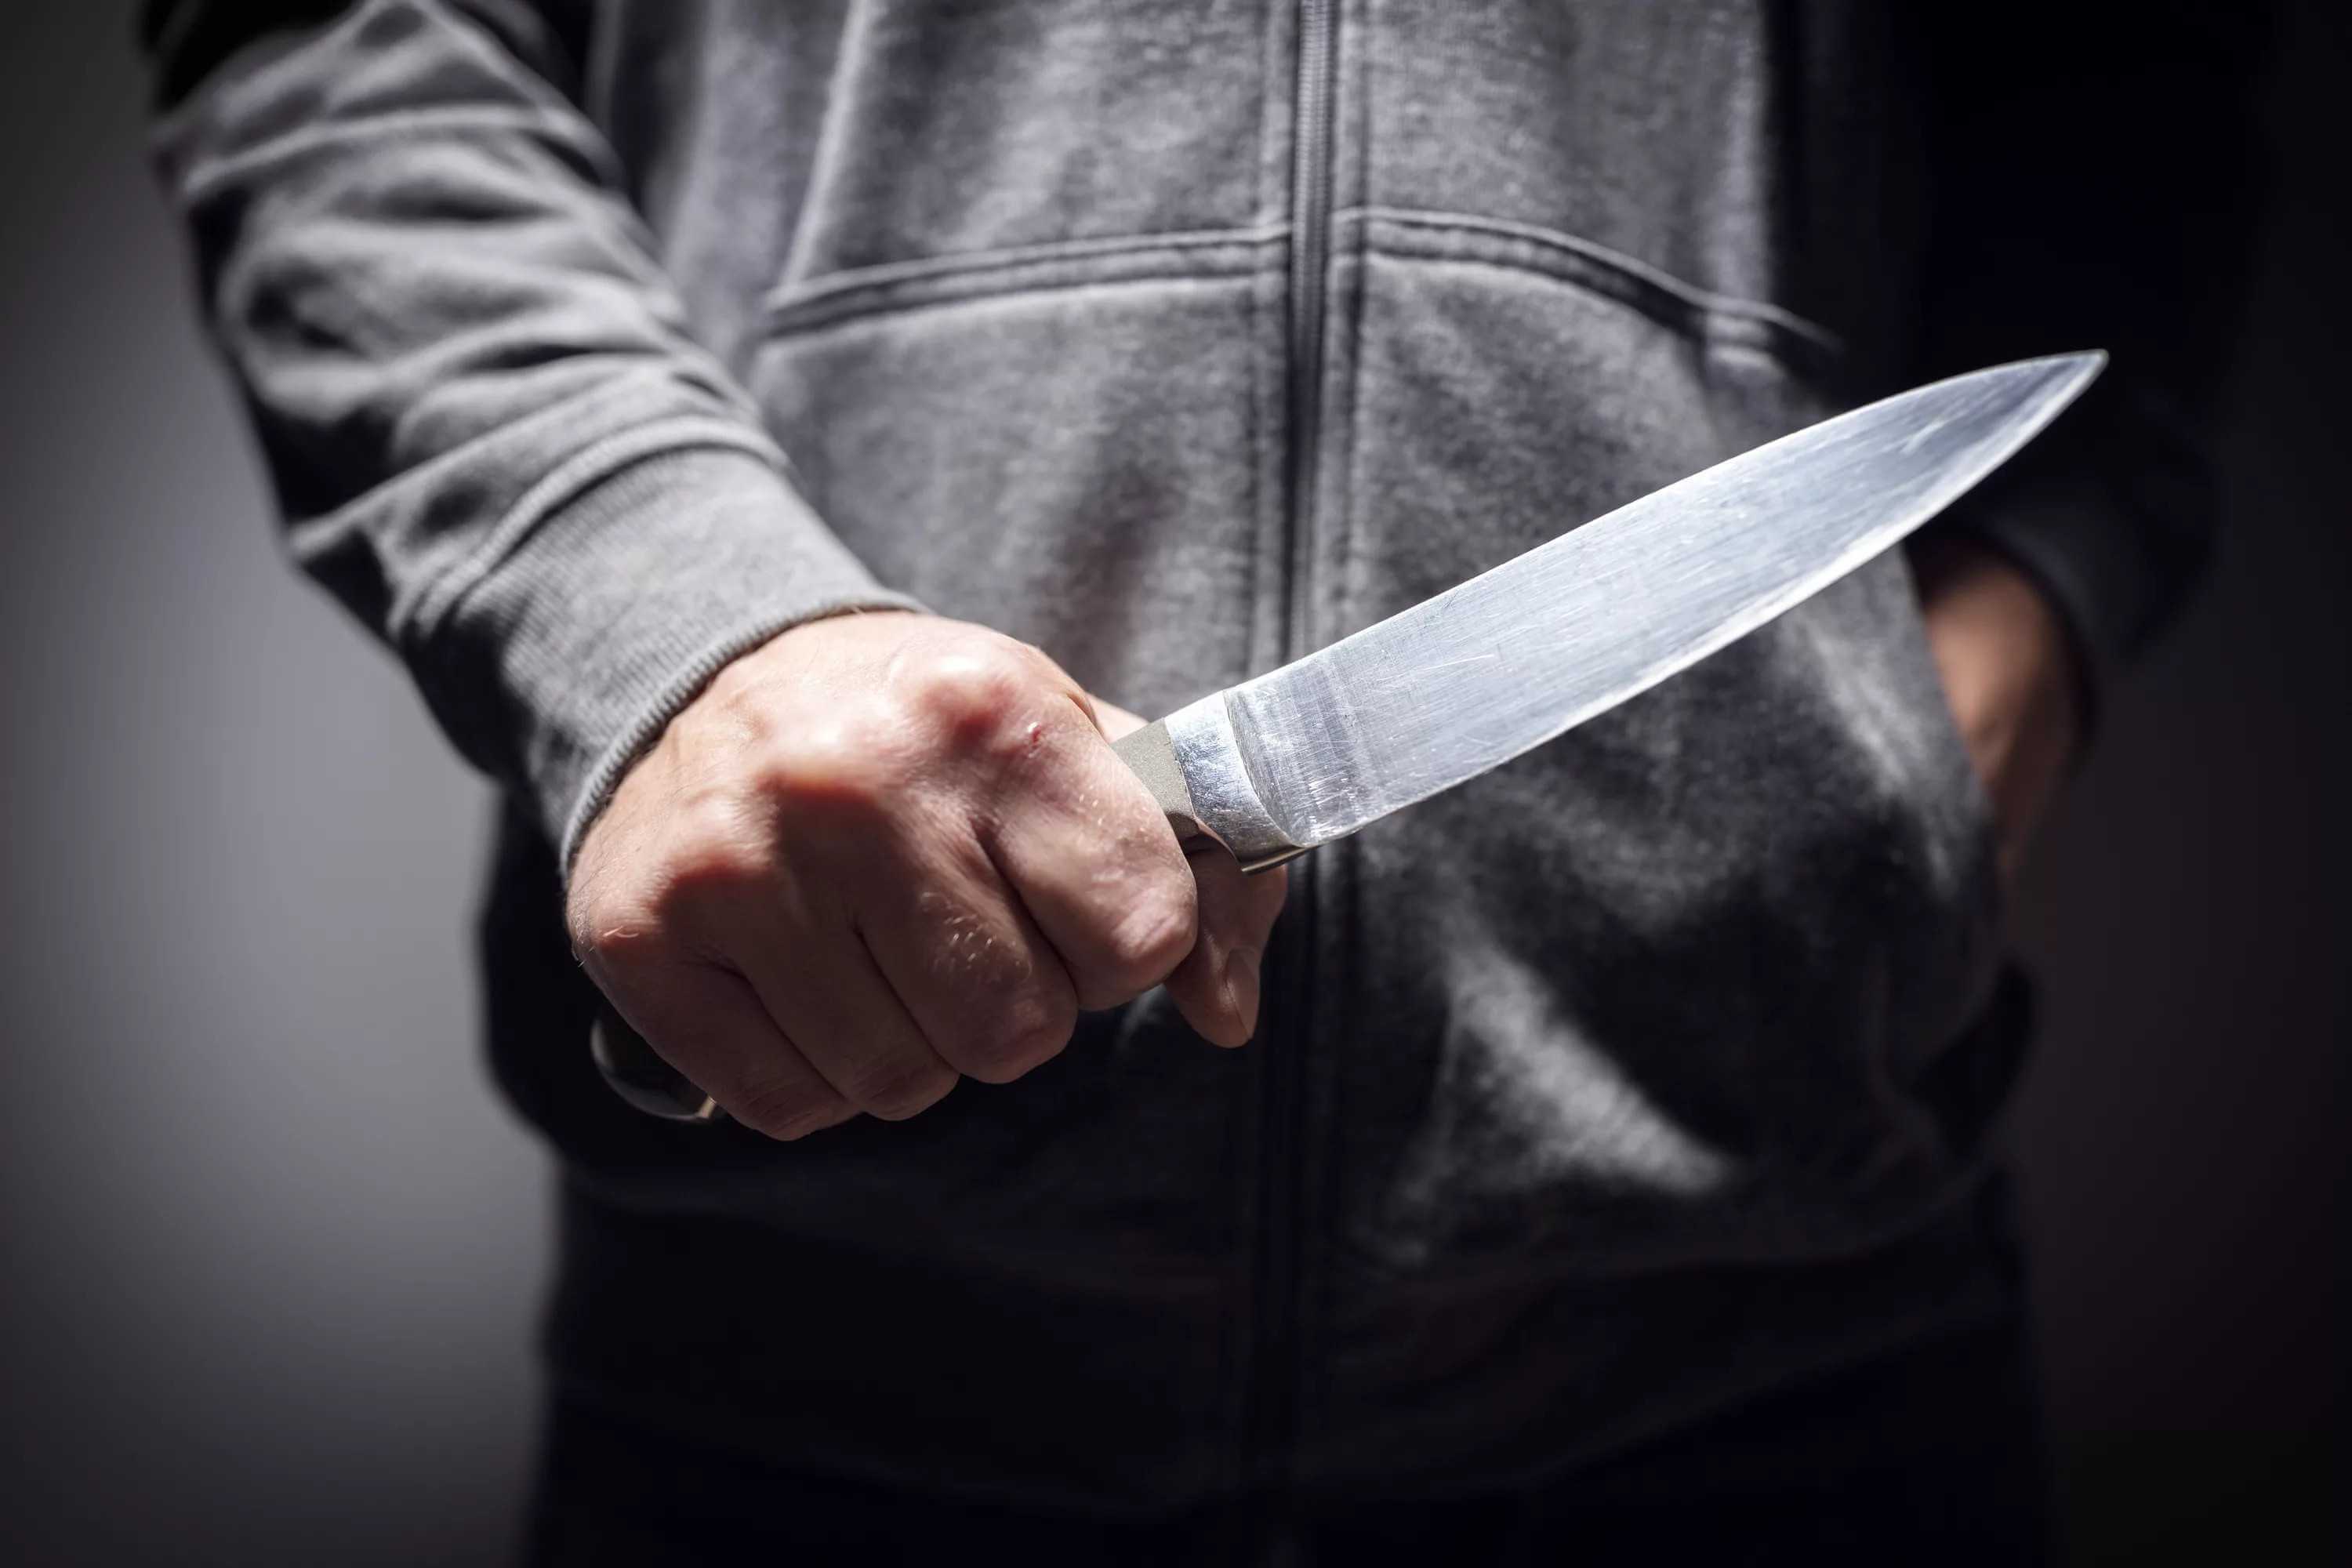 В Могилеве мужчина размахивал ножом на улице из-за конфликта с соседями